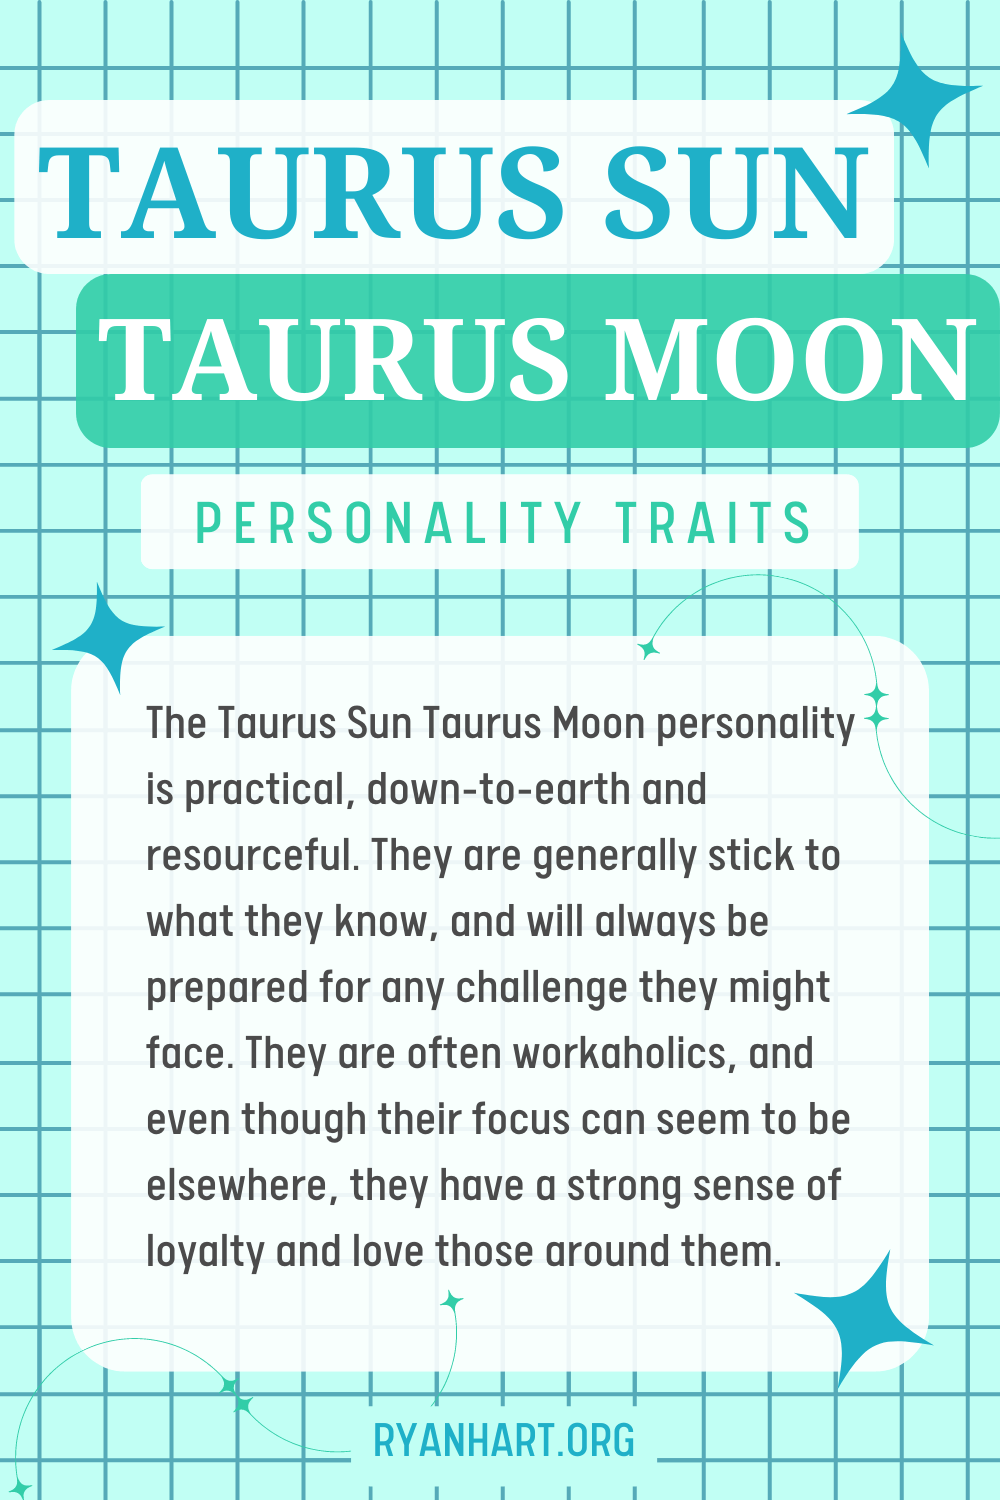 Taurus Sun Taurus Moon Description